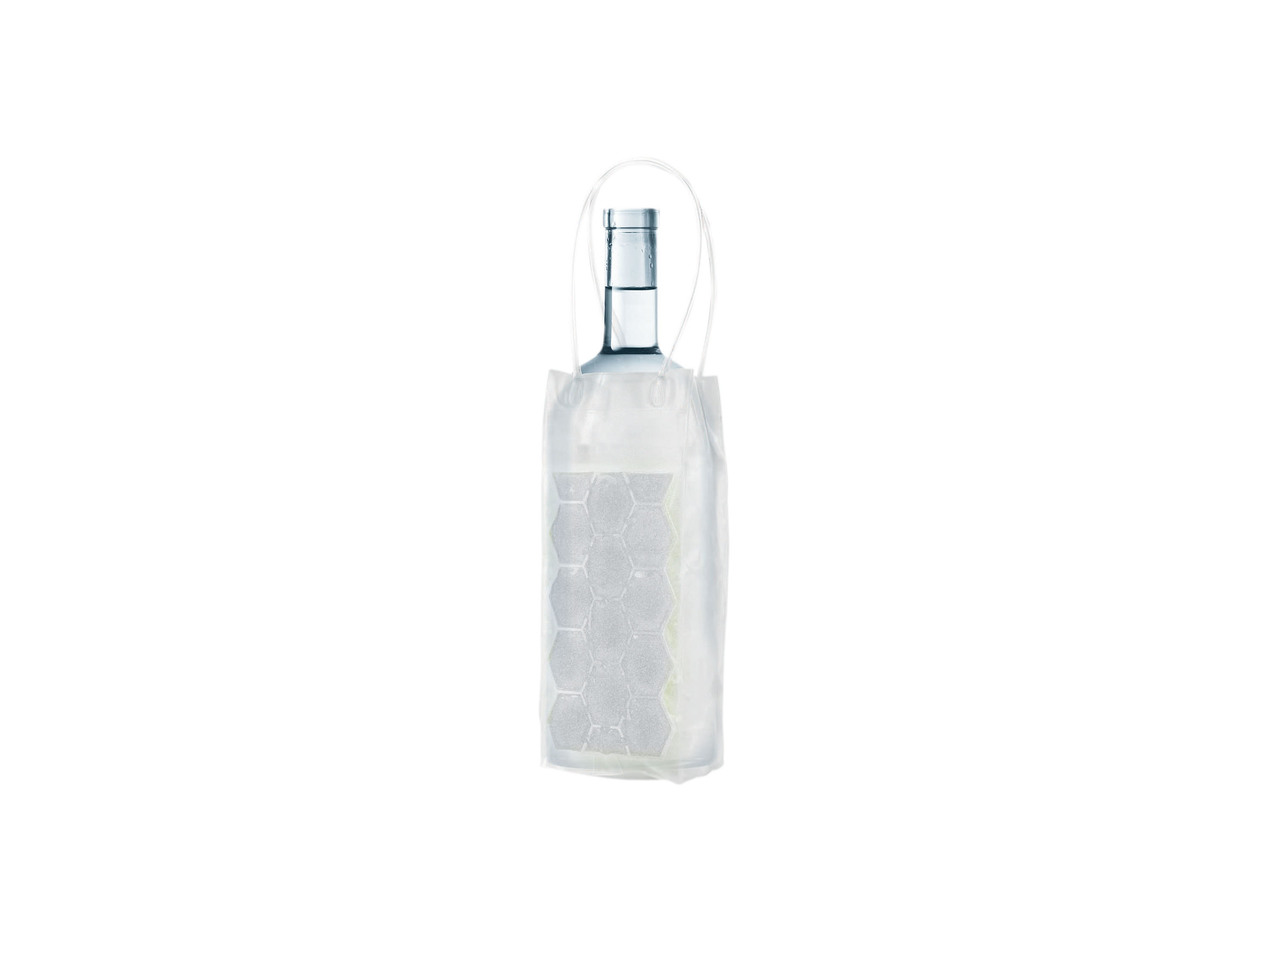 Bottle Holder Cooler Bag or Flexible Cooling Pack